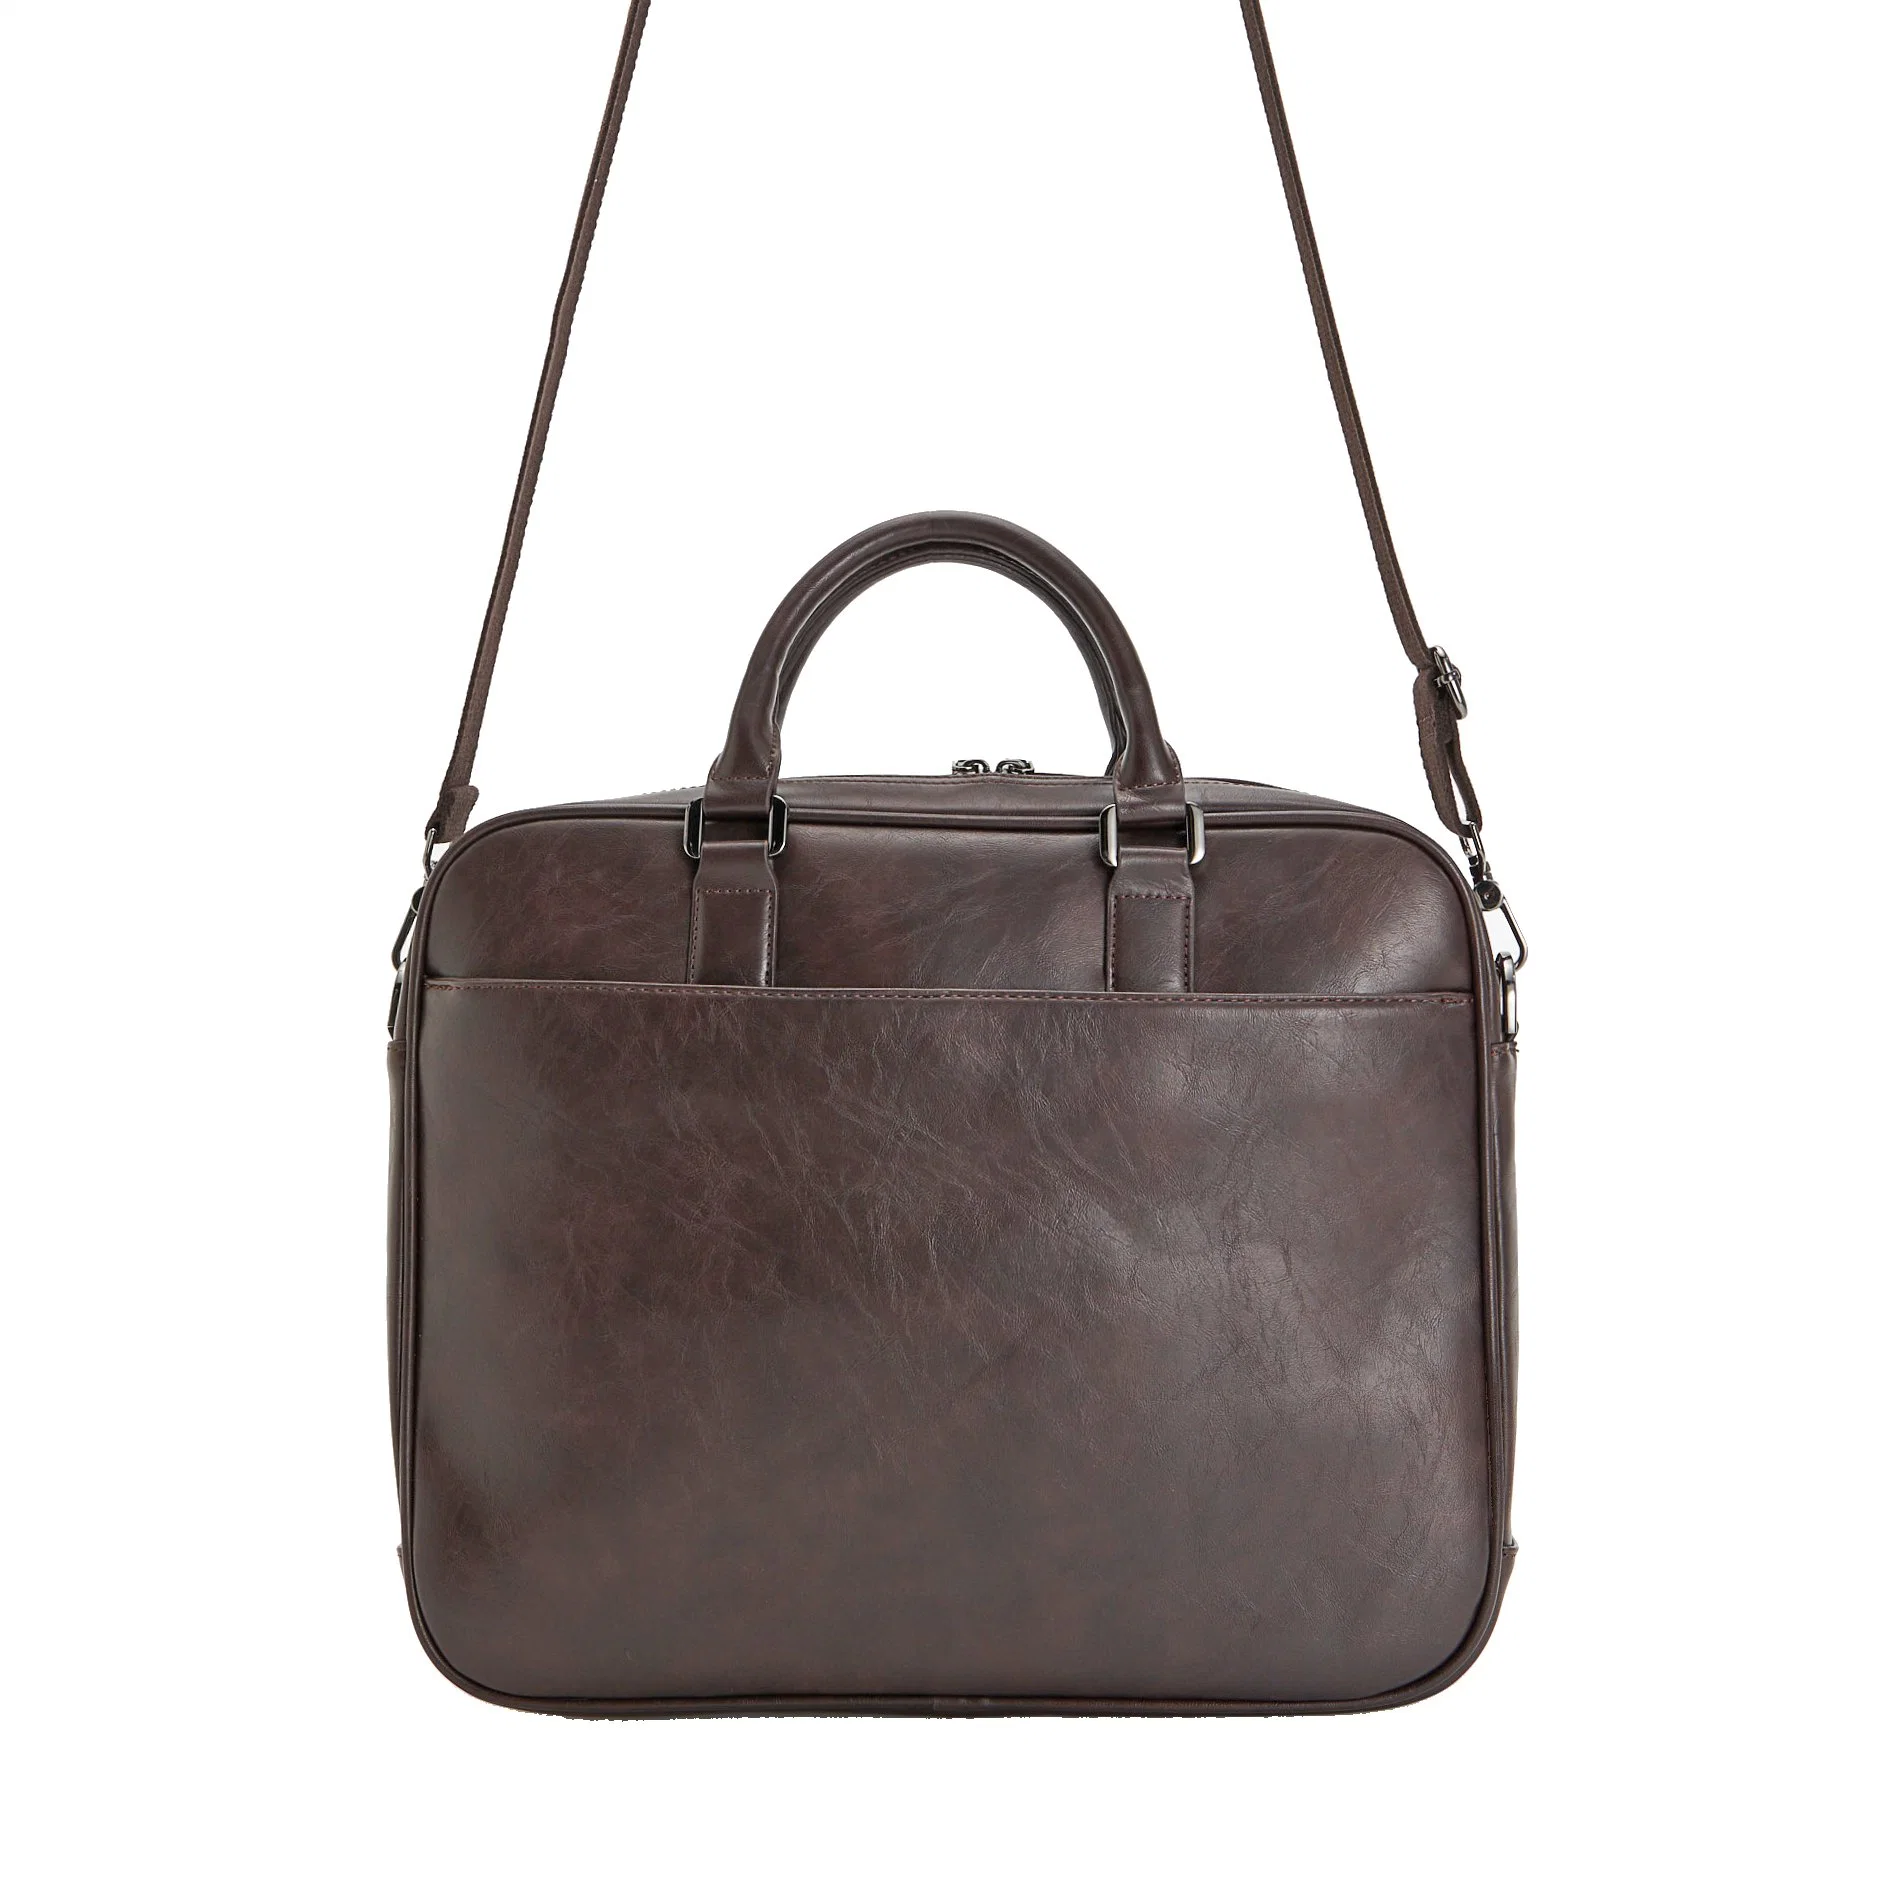 Vintage Laptop Handbag Large Leather Bags Men Business Briefcase Bag